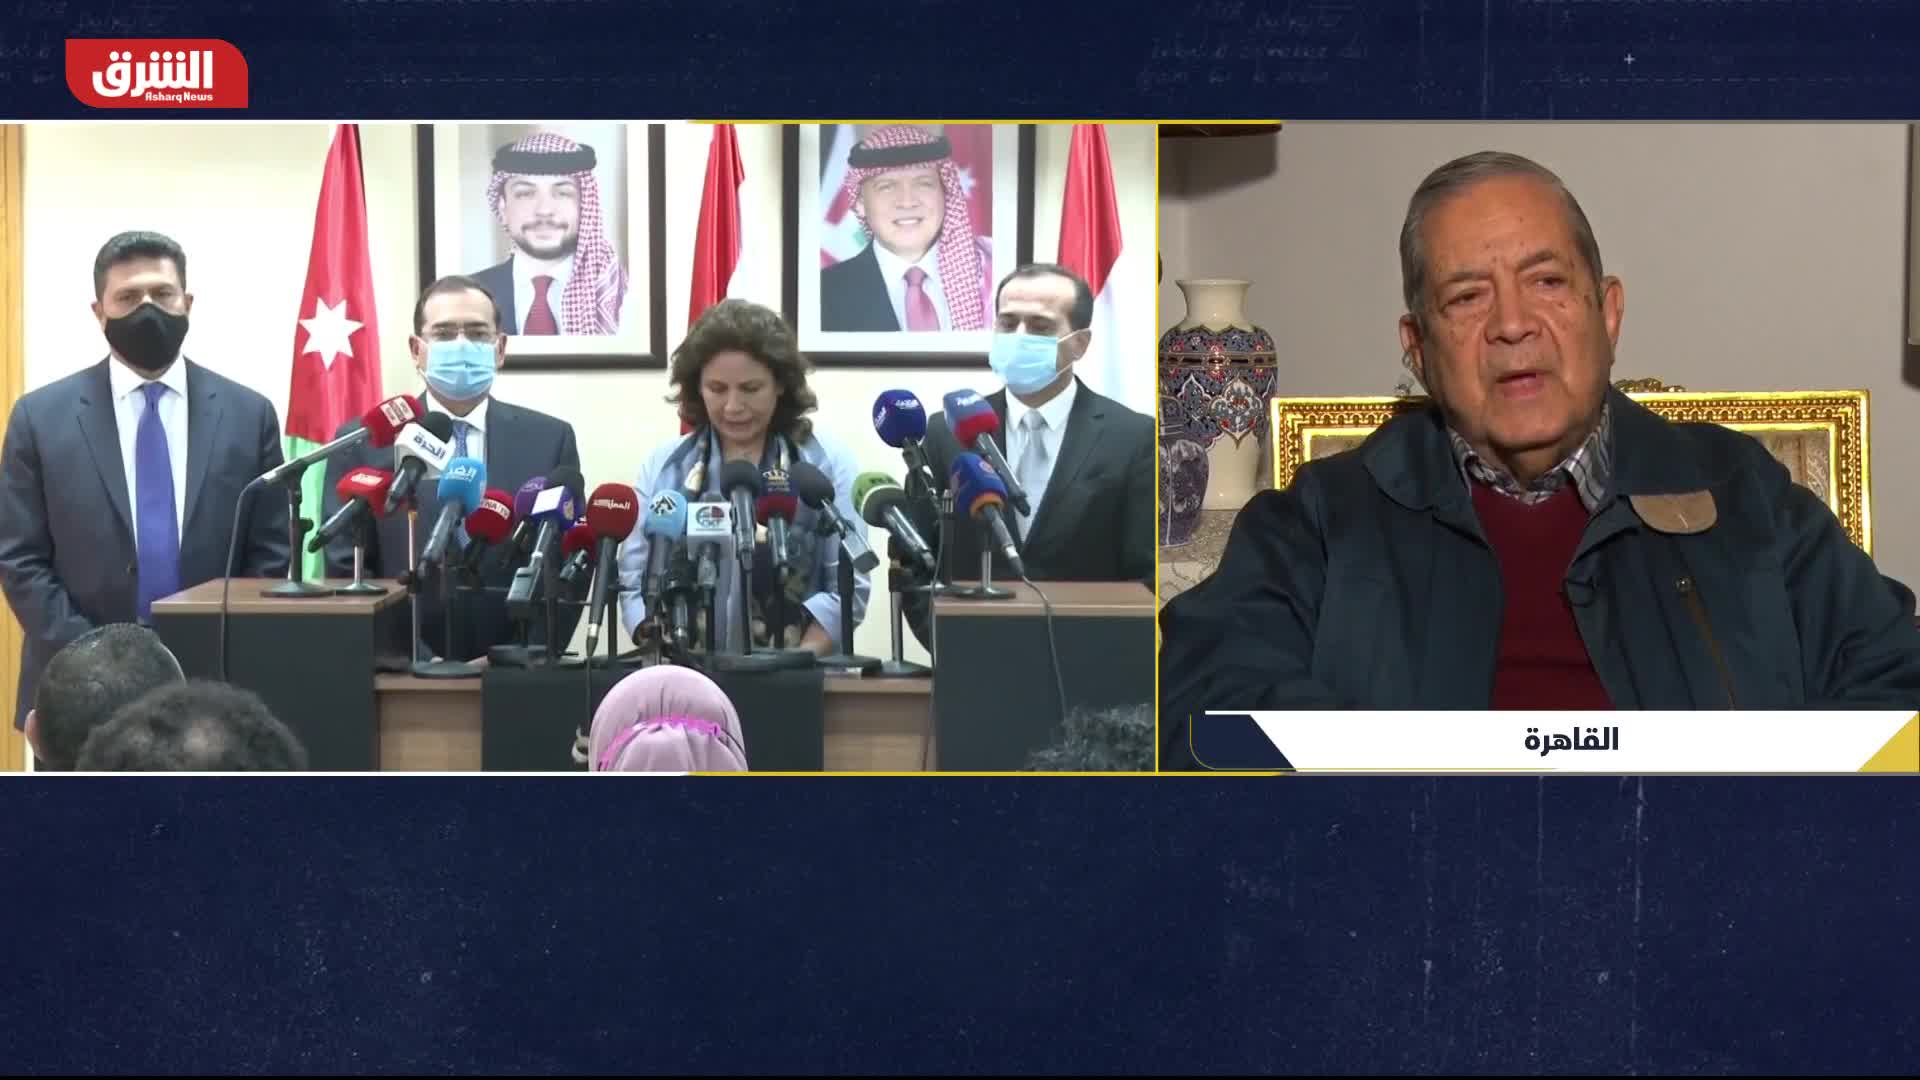 د. أوميد شكري: الإدارة الأميركية ستقدم الدعم الكامل لمشروع نقل الغاز المصري إلى لبنان